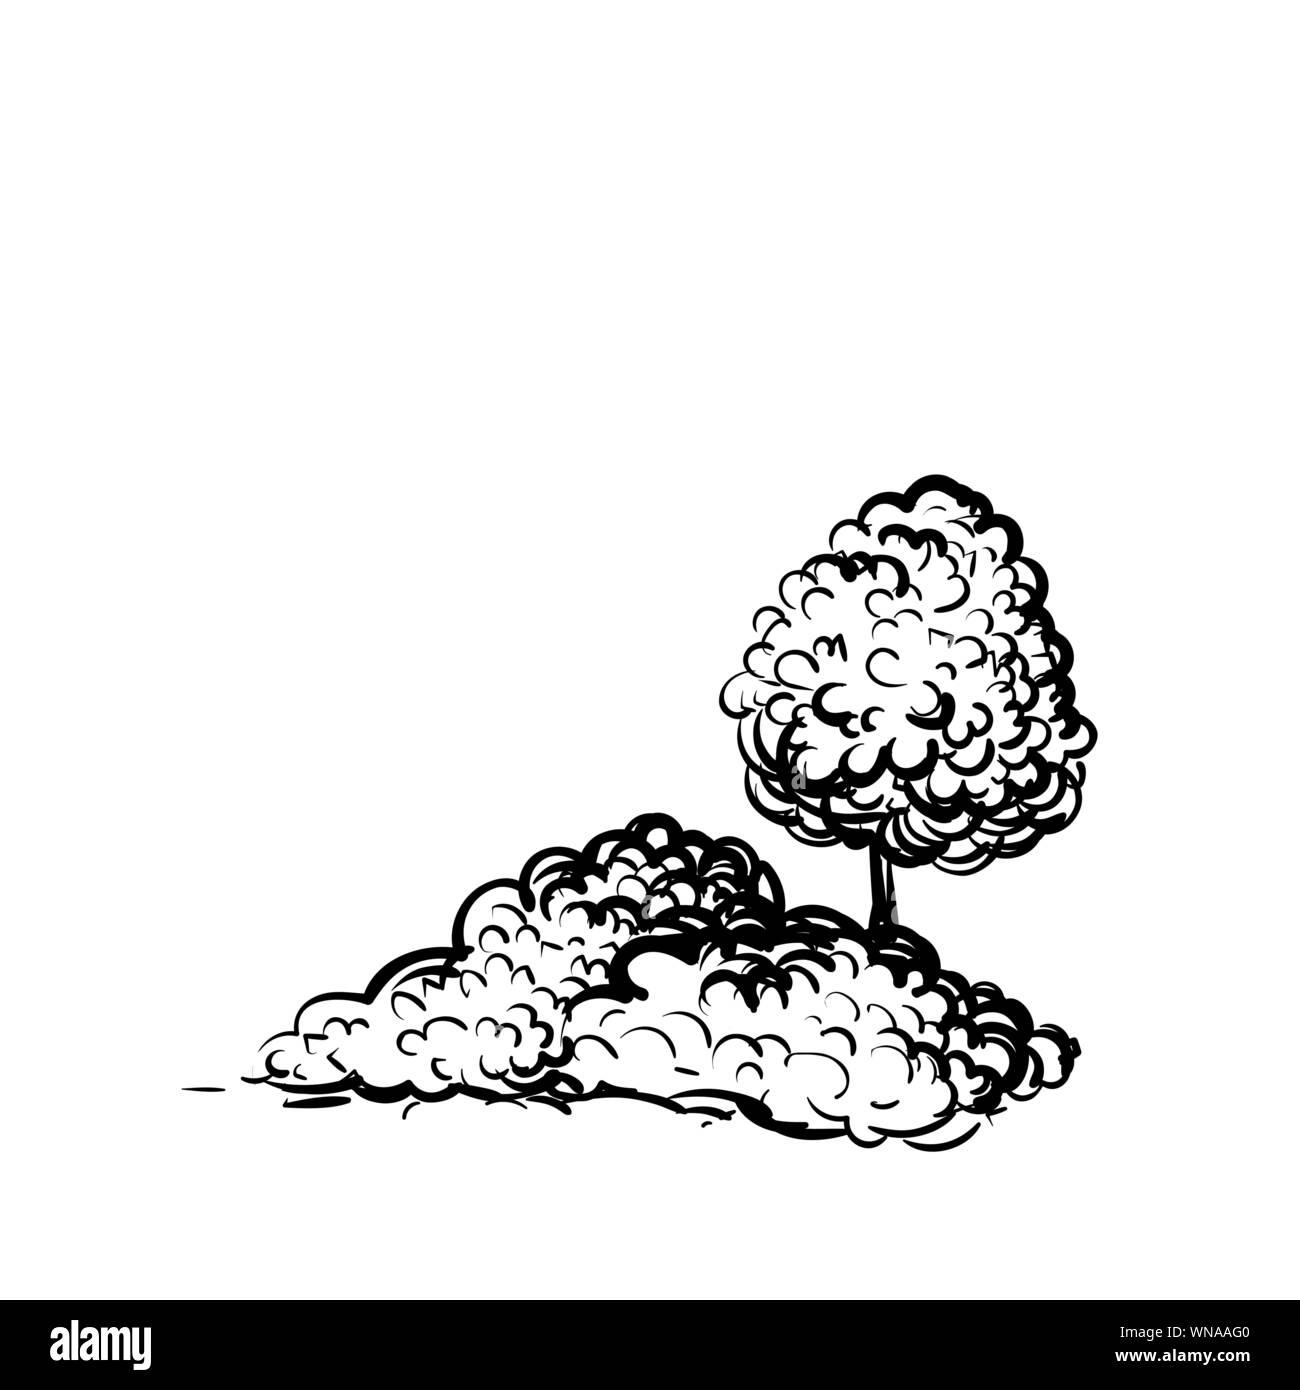 Bäume und Sträucher auf weißem Hintergrund Handskizze stil Abbildung gezeichnet. Pflanzen schwarz und weiß Vektor monochrom Übersicht Bild Stock Vektor